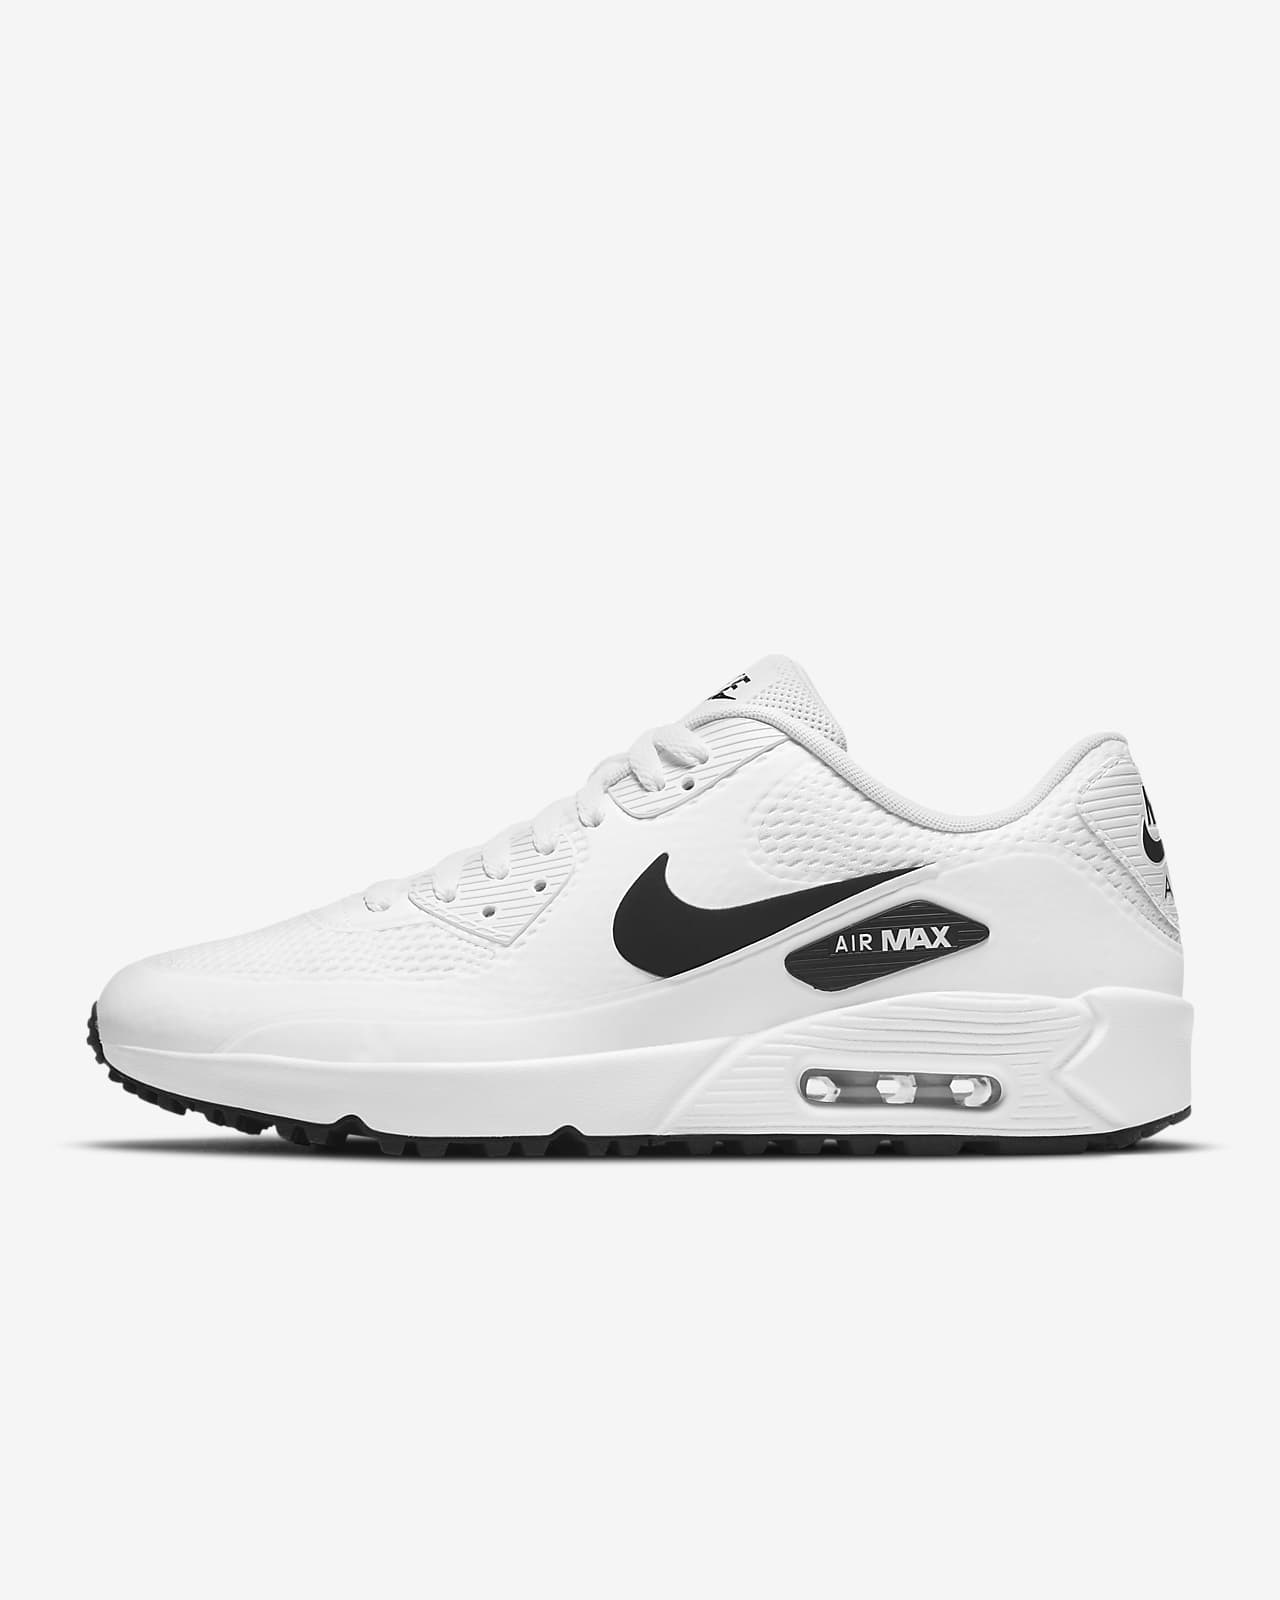 all white nike air max golf shoes